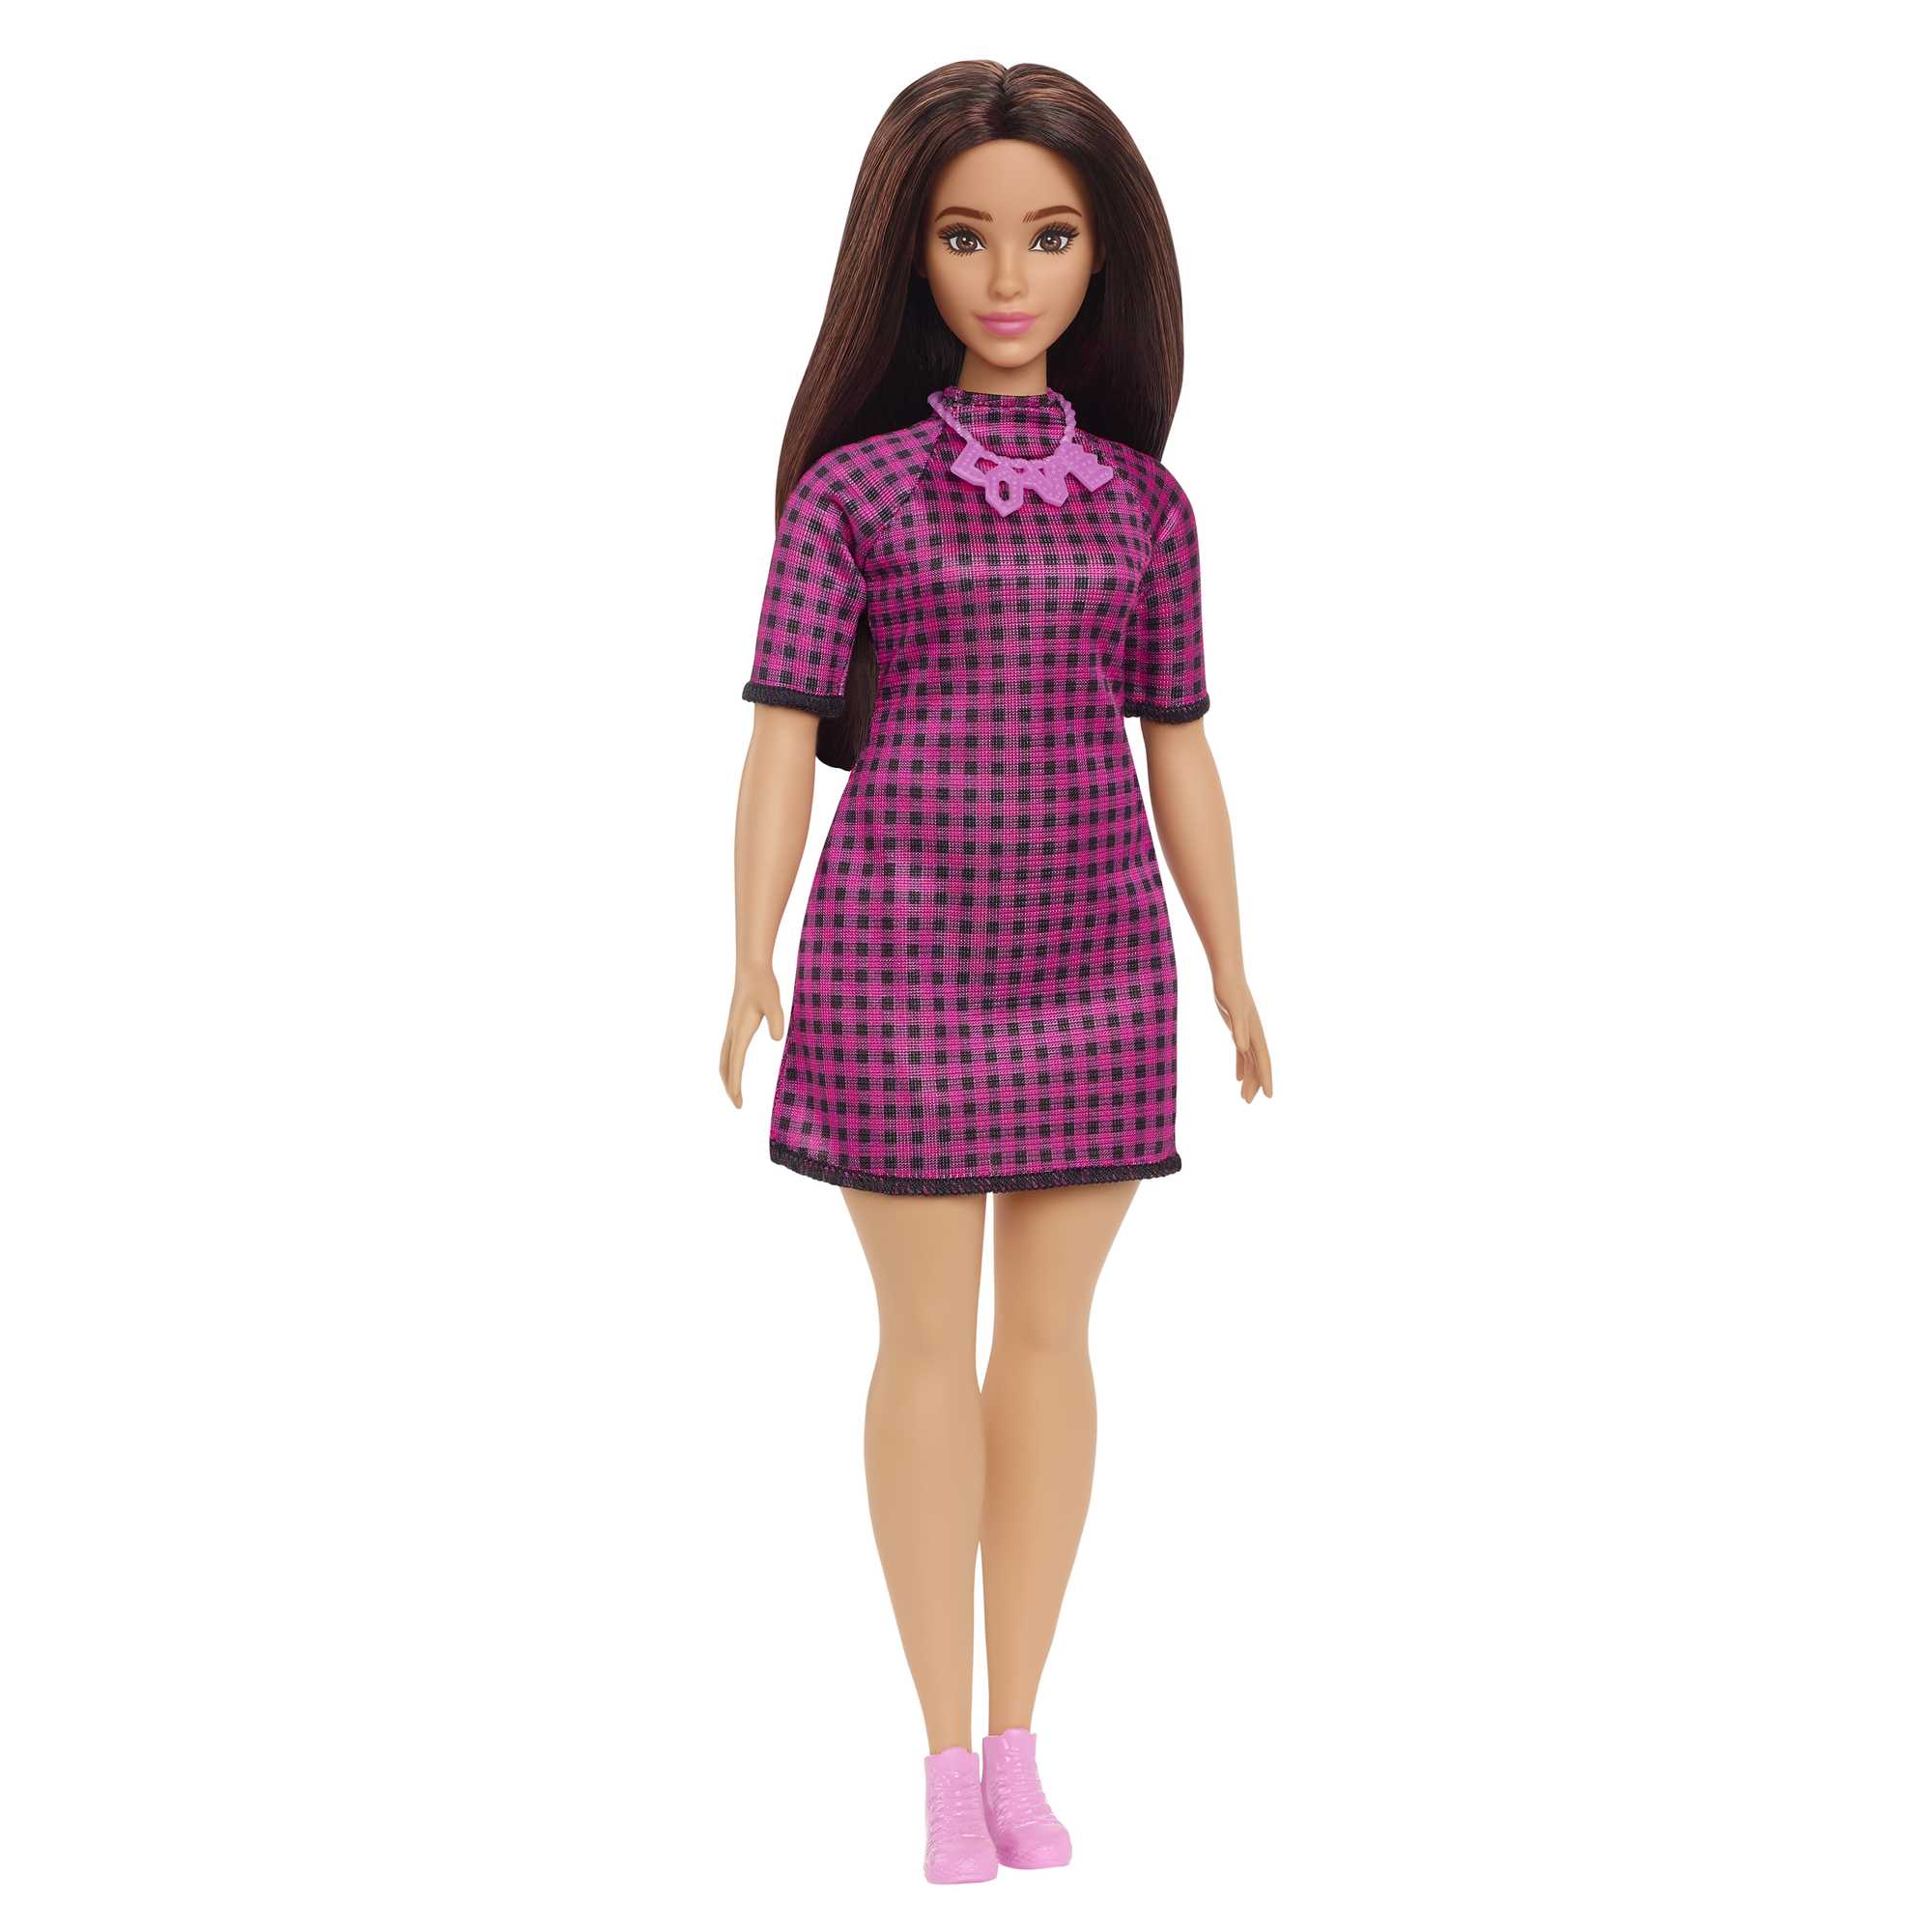 Кукла Mattel Barbie с длинными волосами брюнетка HBV20 кукла barbie принцесса брюнетка